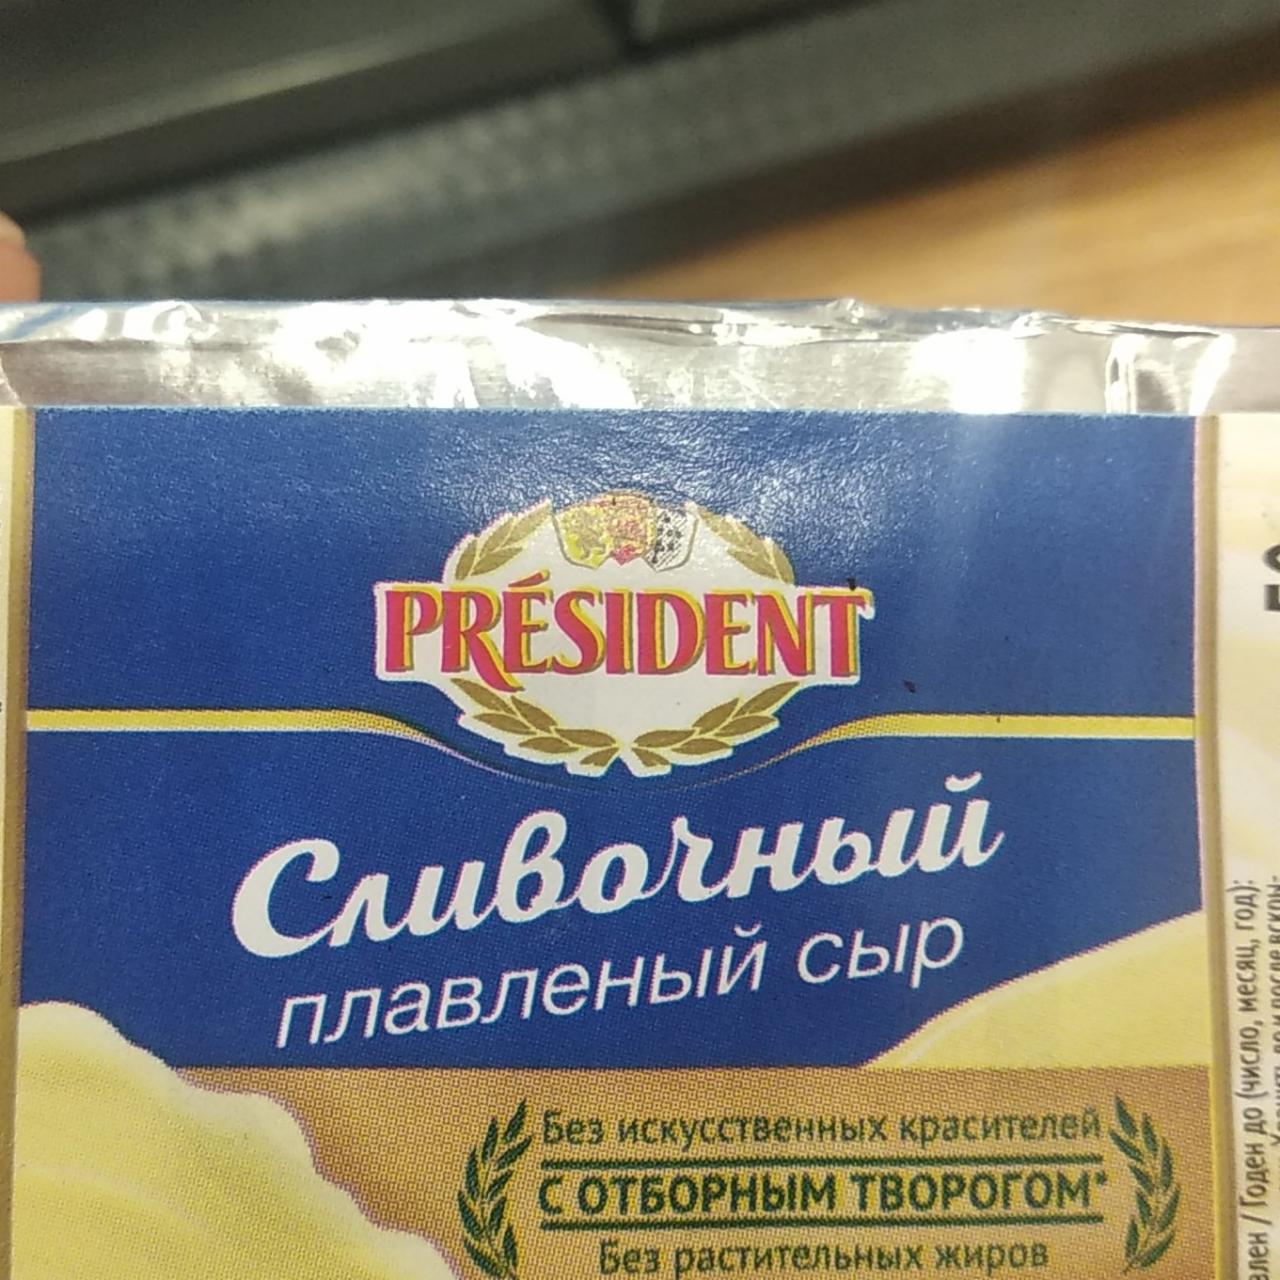 Фото - Сыр плавленый сливочный с отборным творогом President Президент